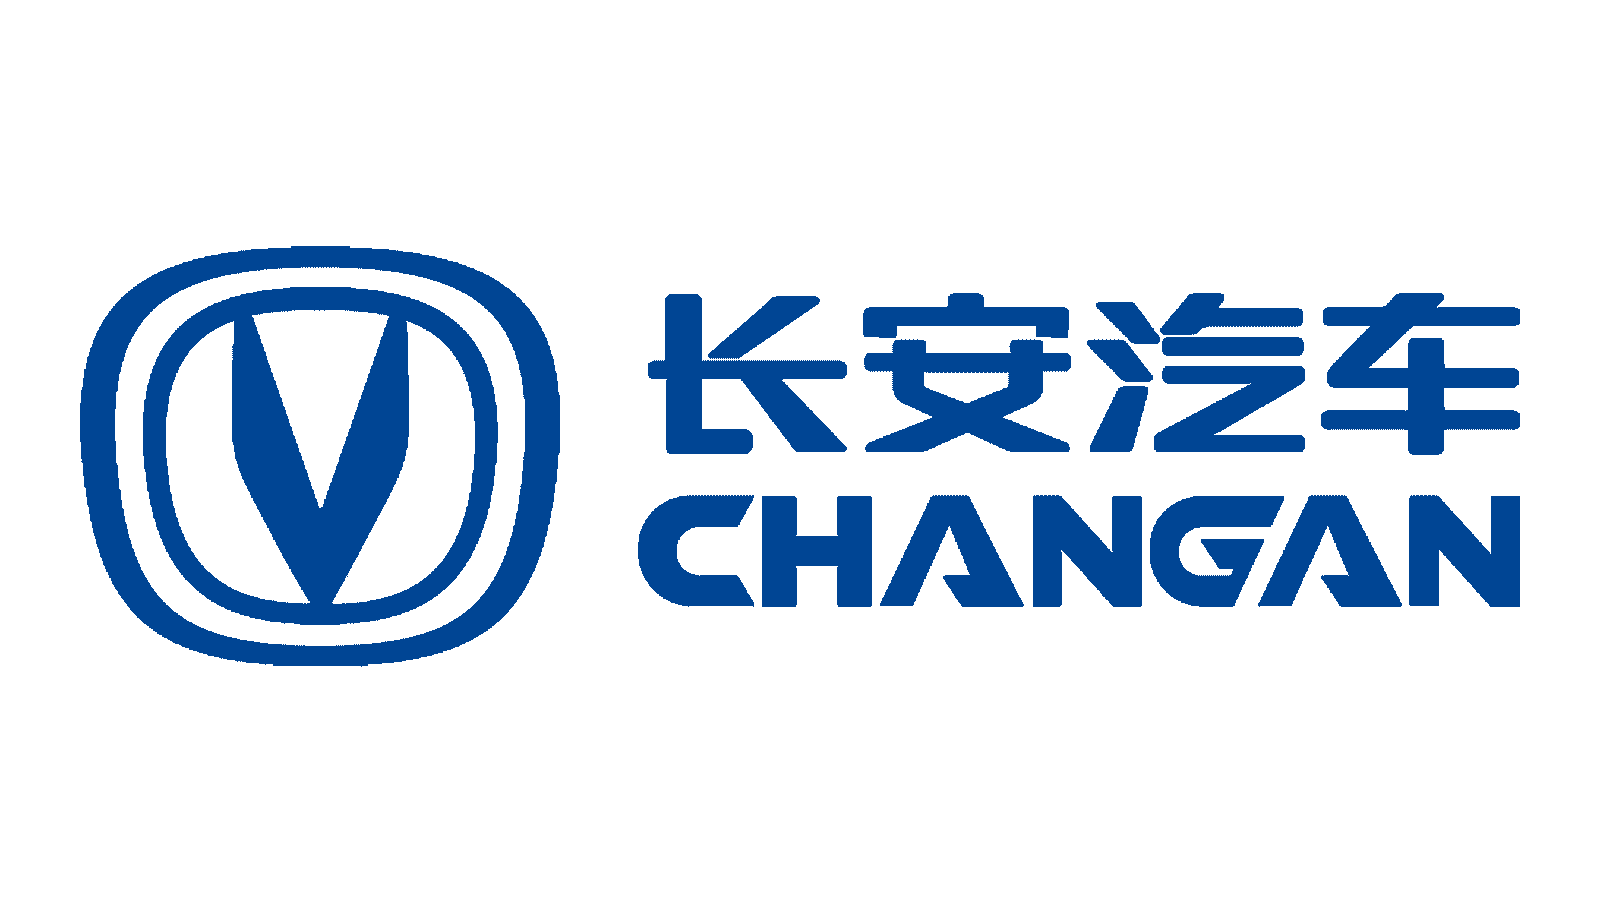 Changan-Logo